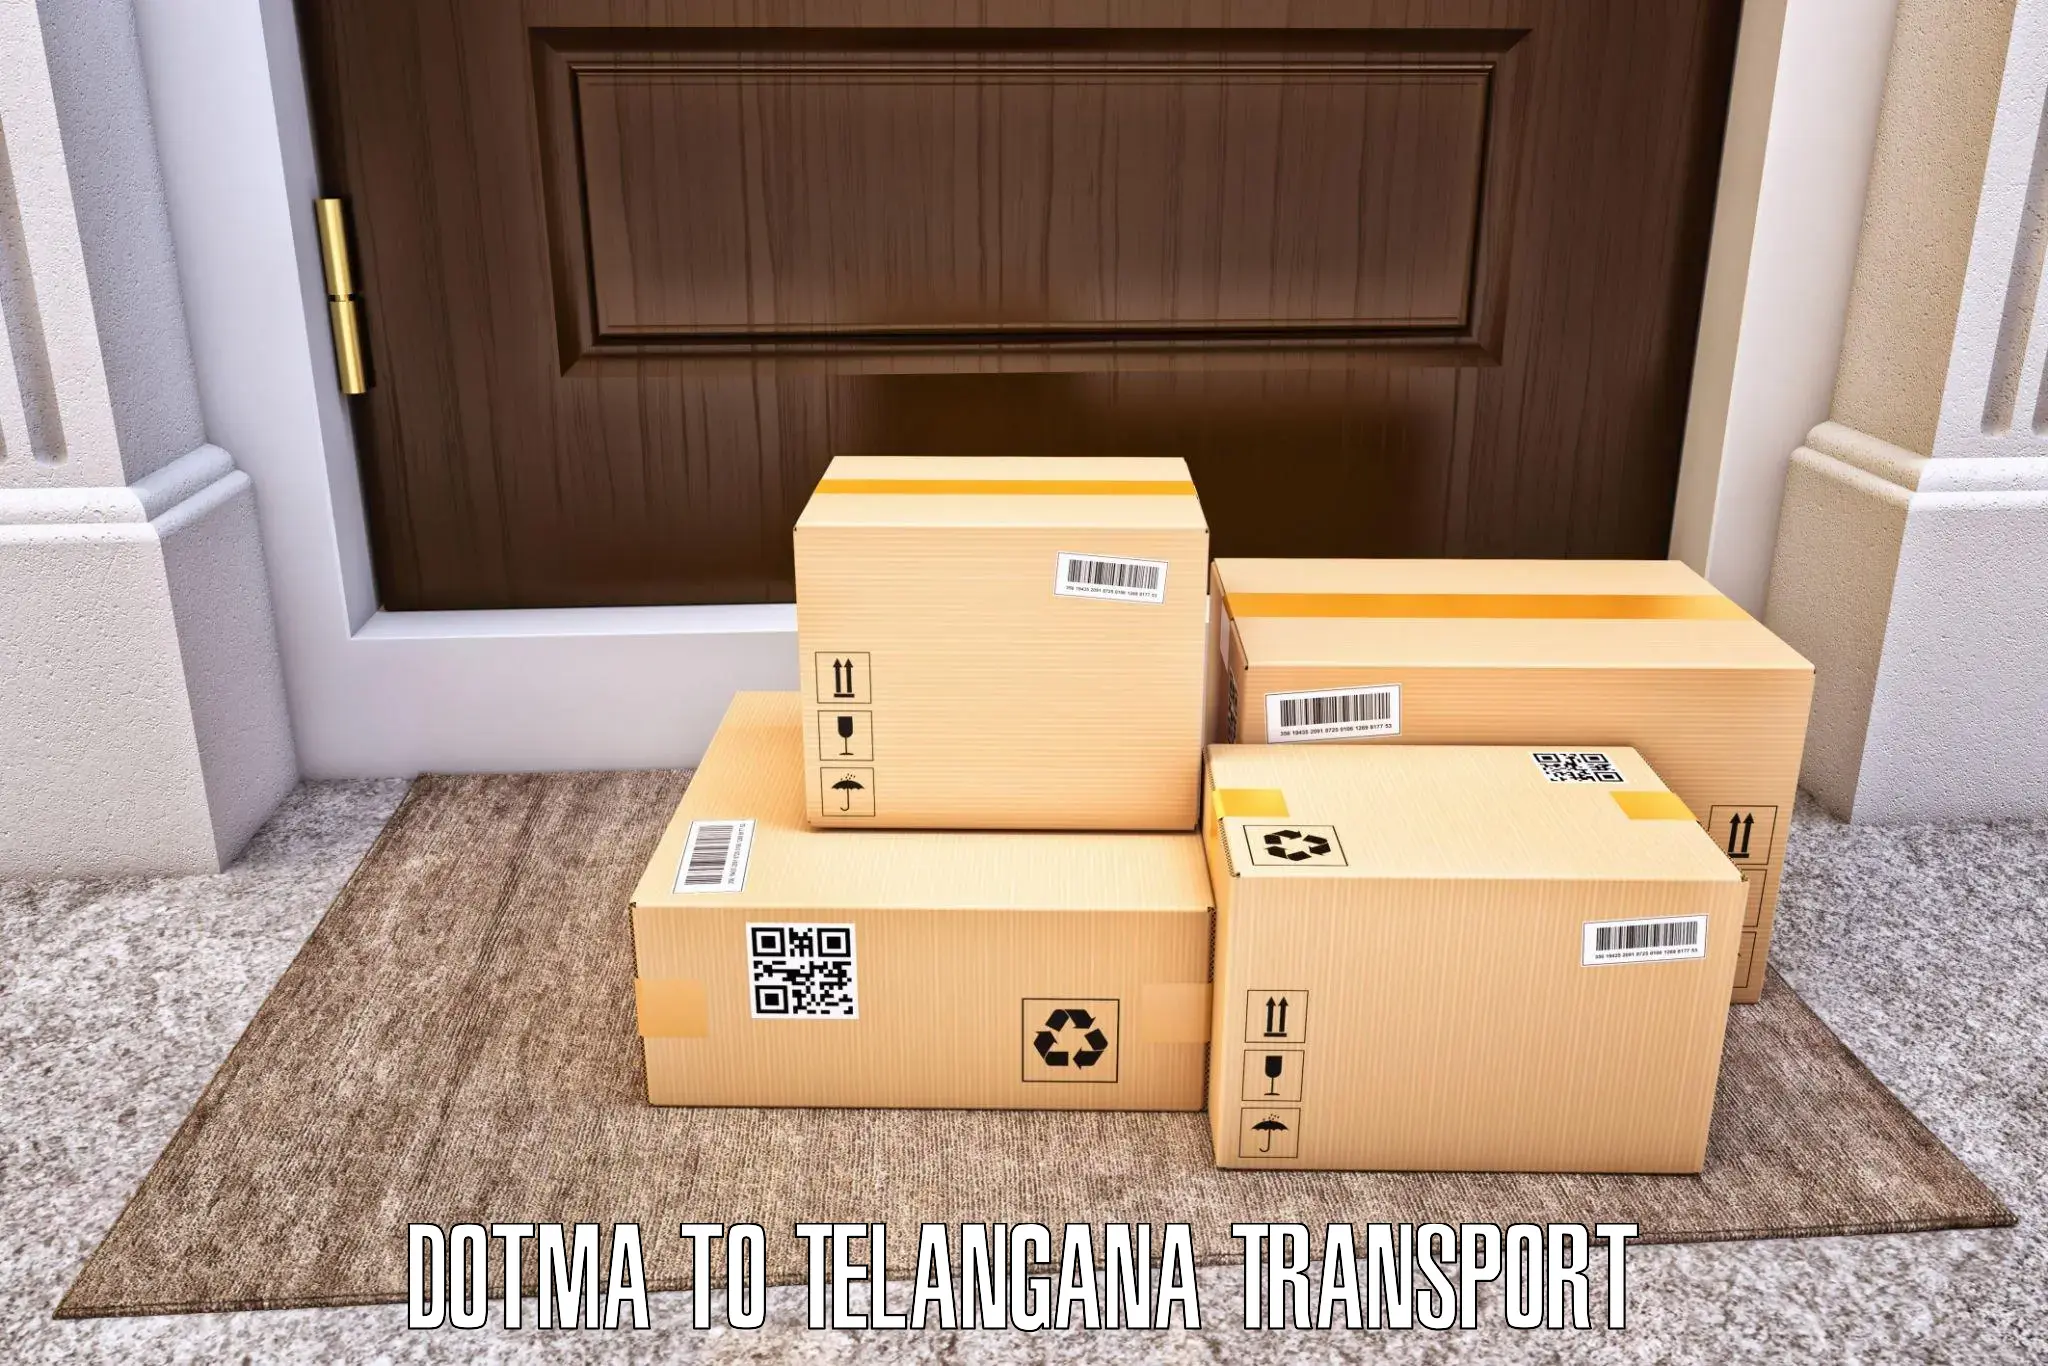 Online transport Dotma to Bhainsa